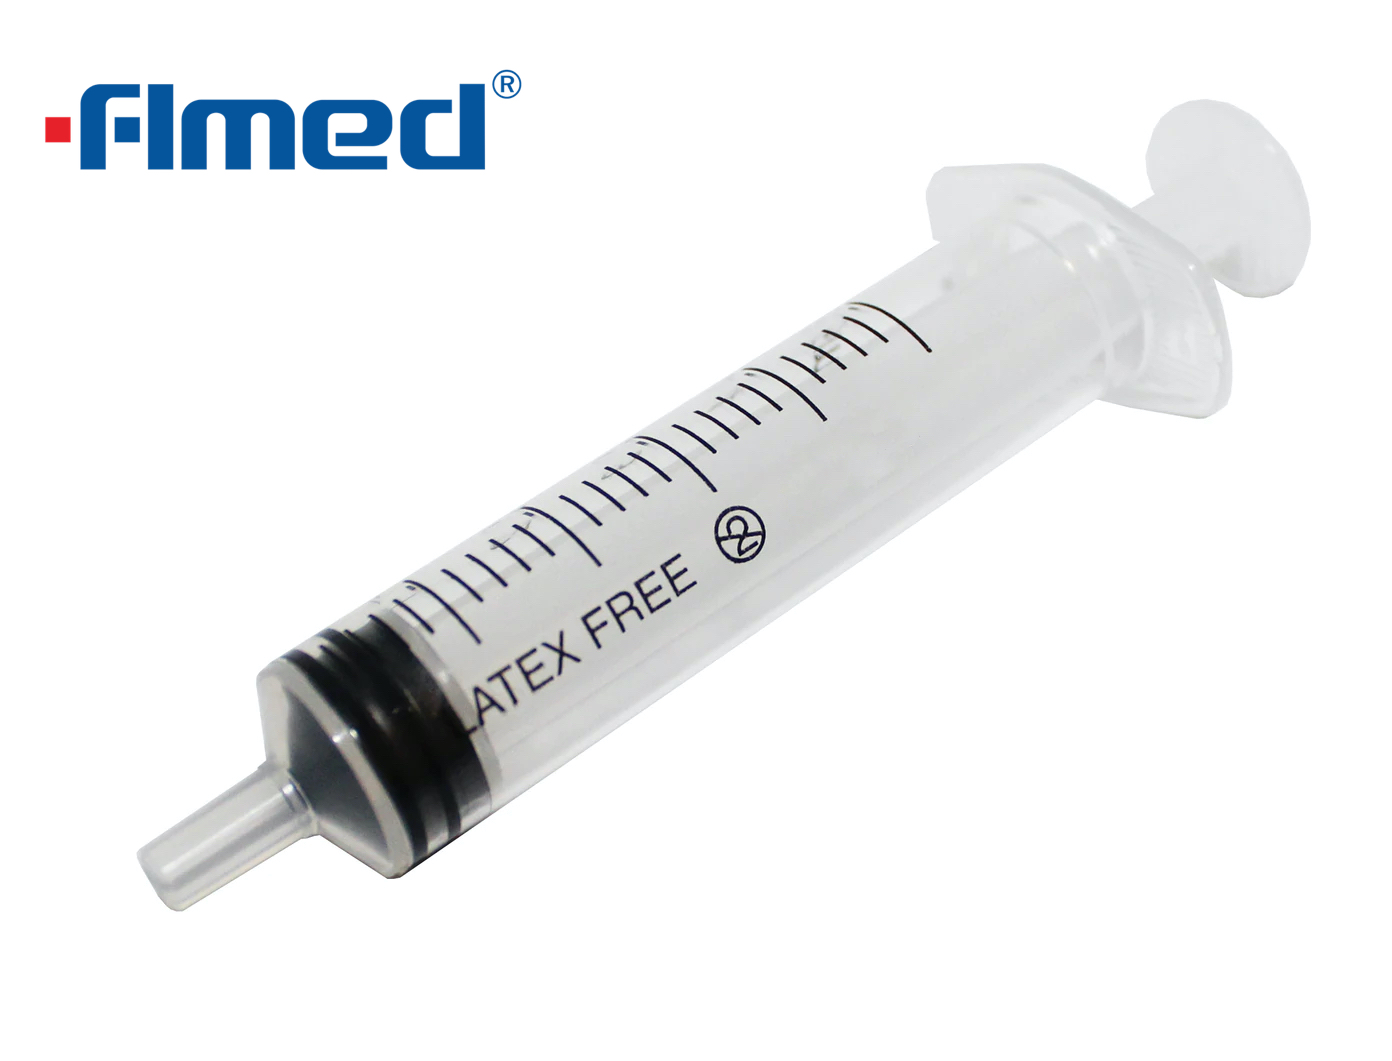 5ml Syringe & Needle 23g x 1/4"CE marked single use